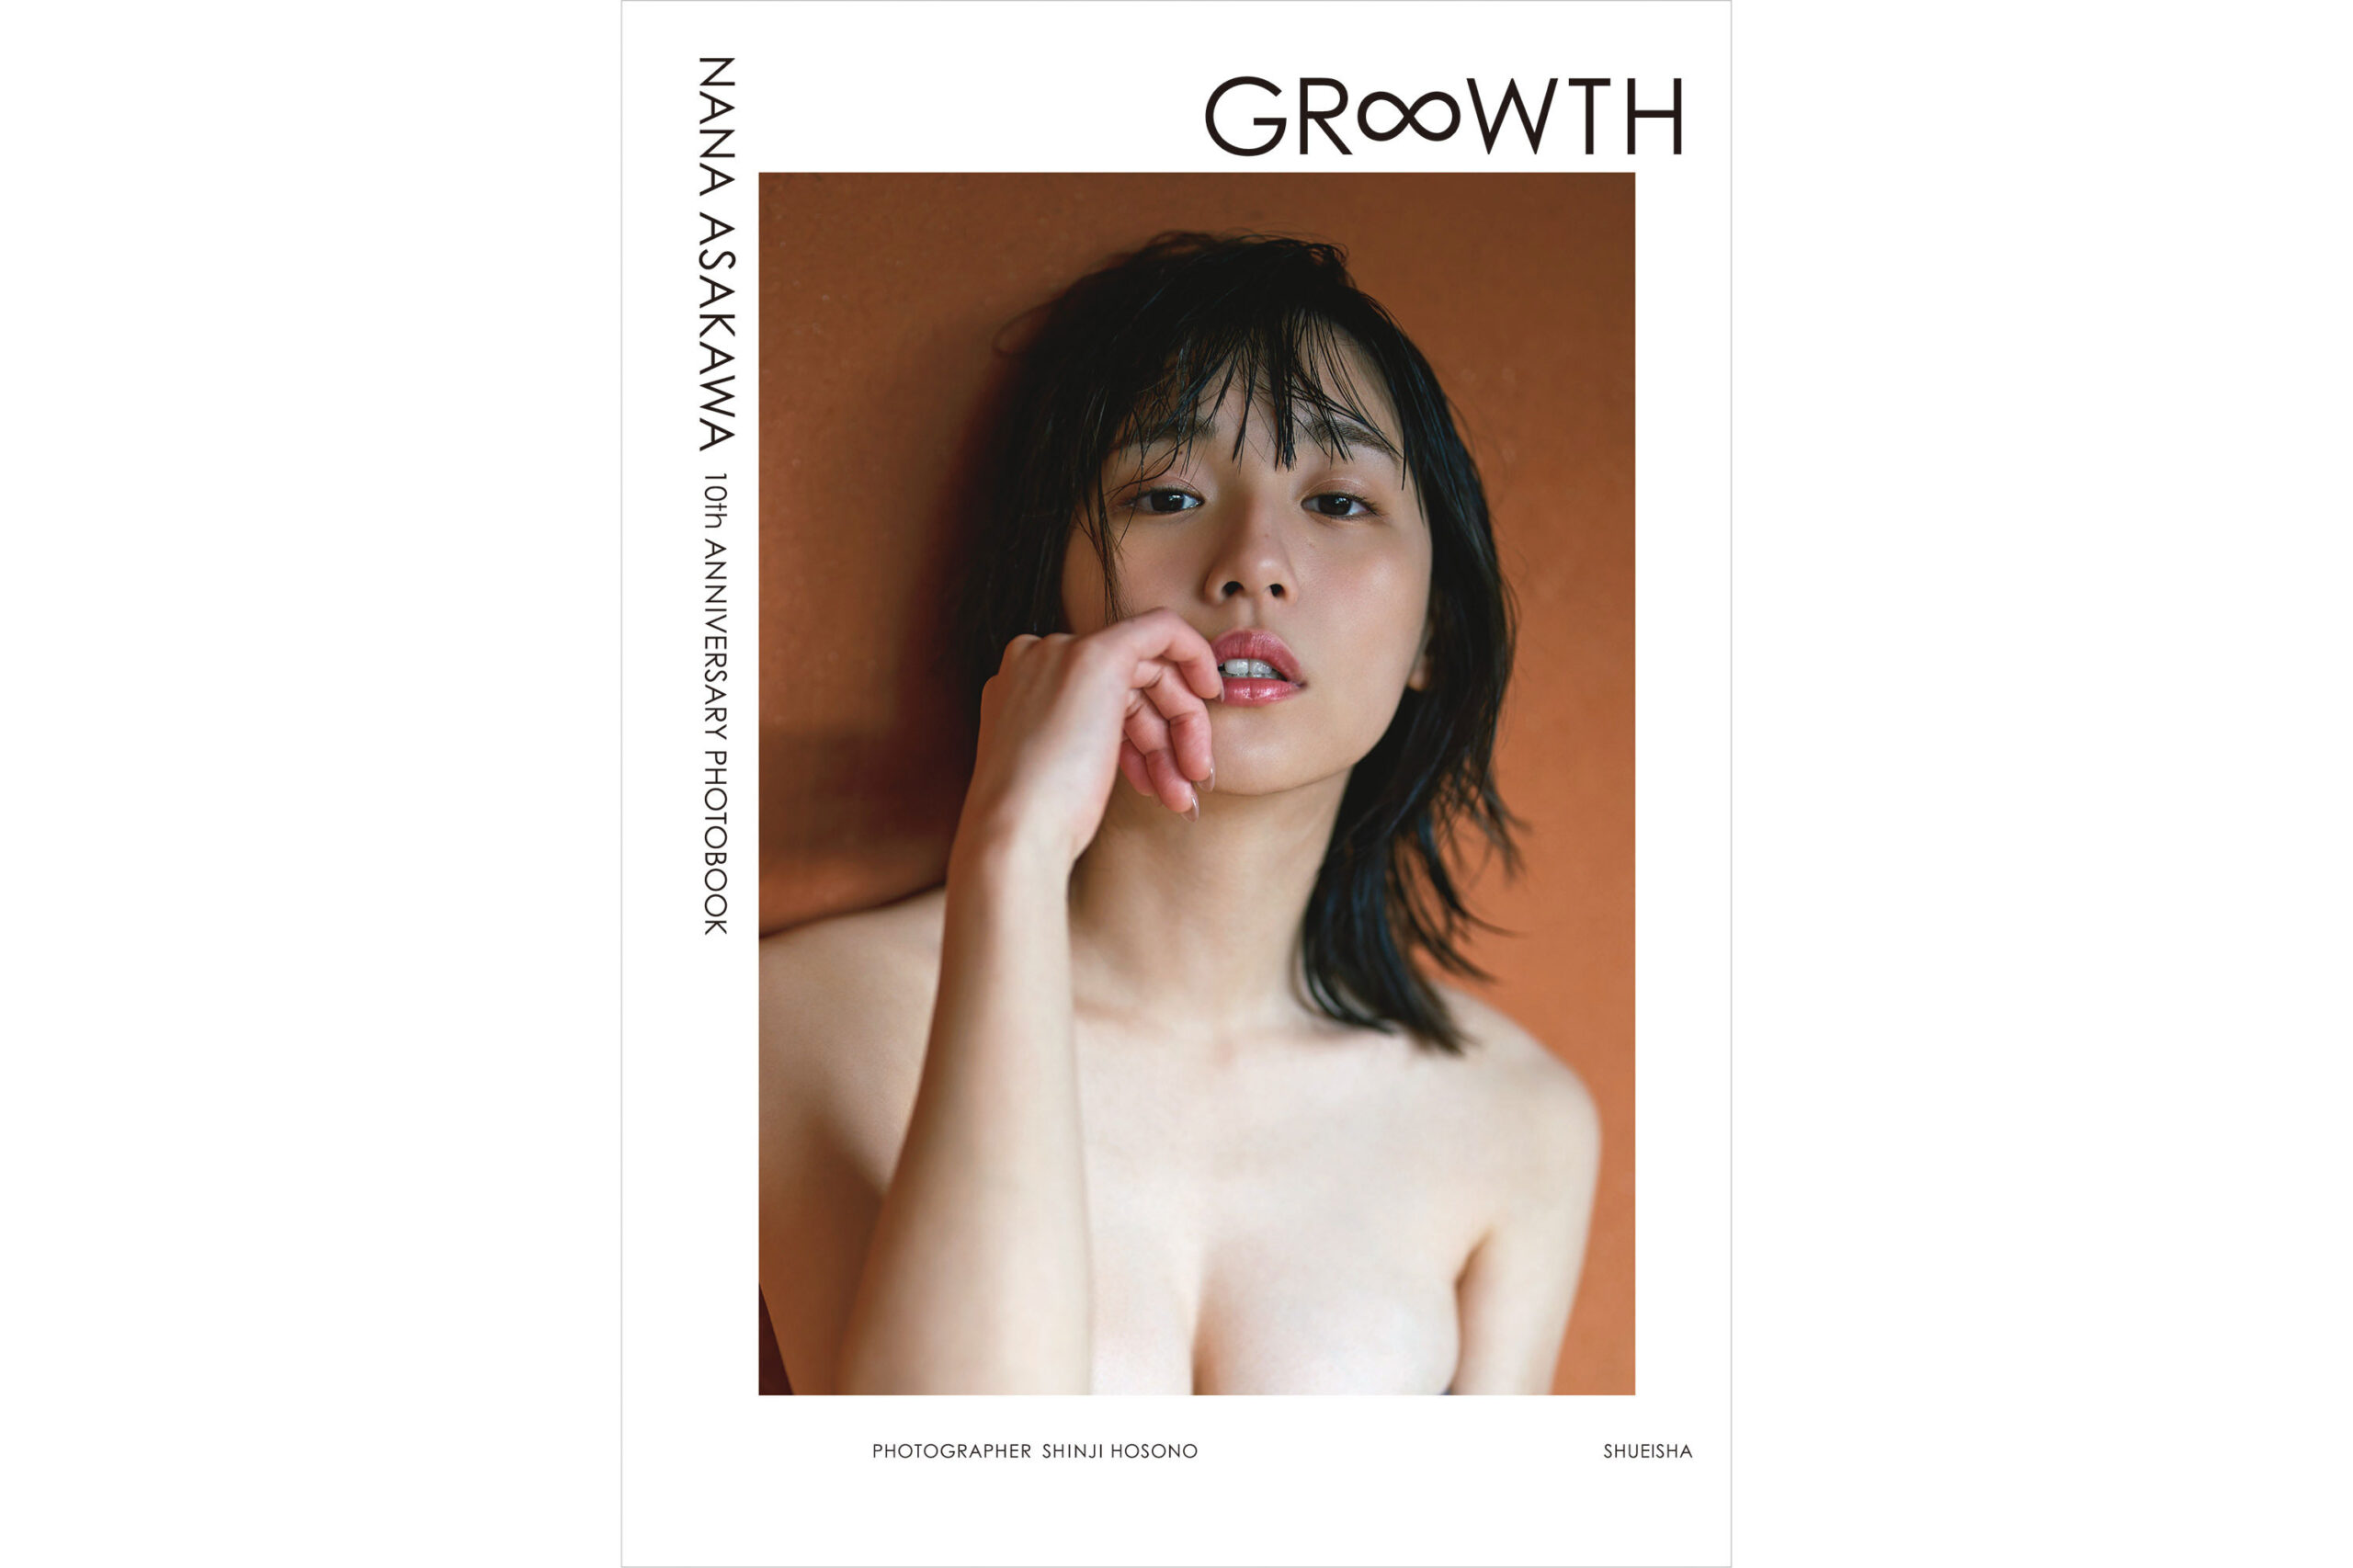 浅川梨奈デビュー10周年記念、3年ぶりの写真集「GR∞WTH」発売決定！「この10年での成長、応援してくださる皆様への感謝の気持ちをお届けしたい」